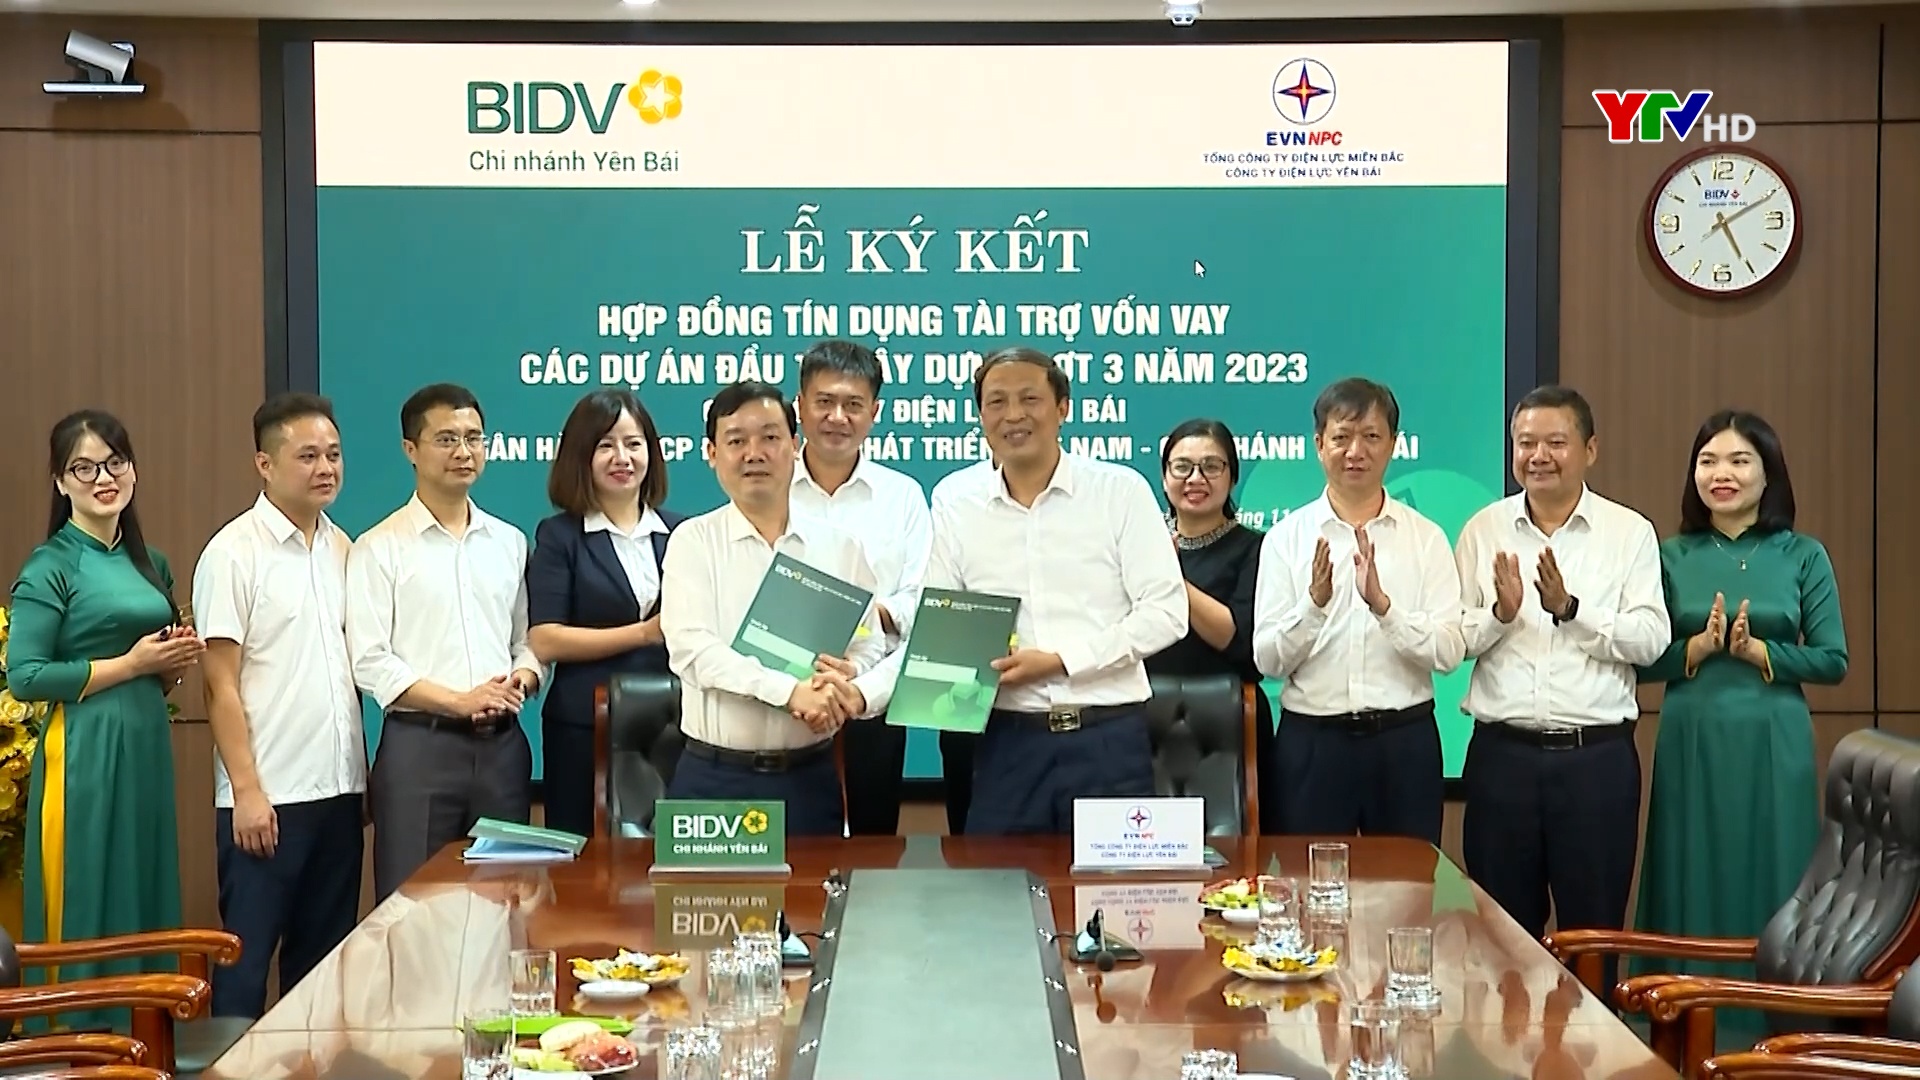 BIDV chi nhánh Yên Bái ký hợp đồng tín dụng tài trợ vốn cho Công ty Điện lực Yên Bái